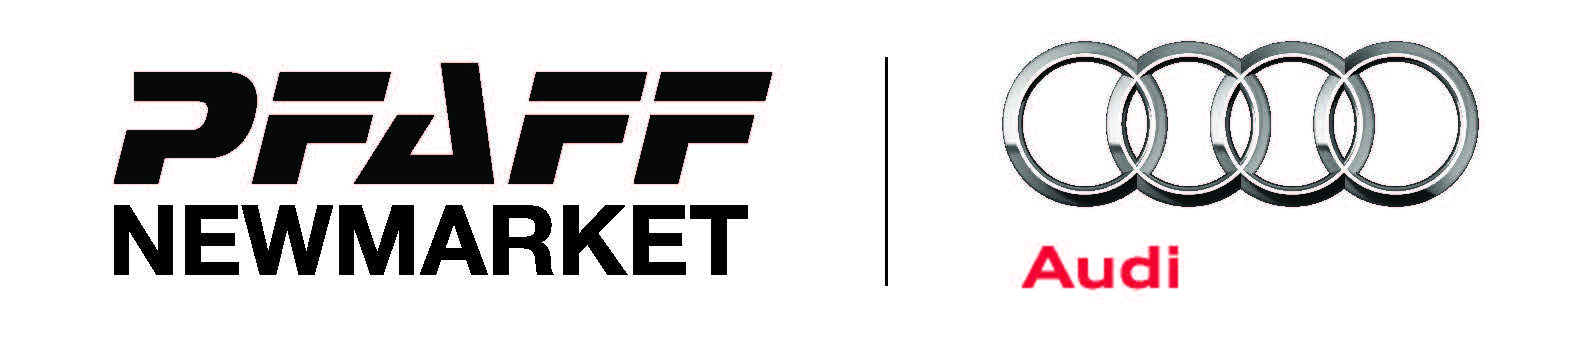 Pfaff Audi Newmarket Logo